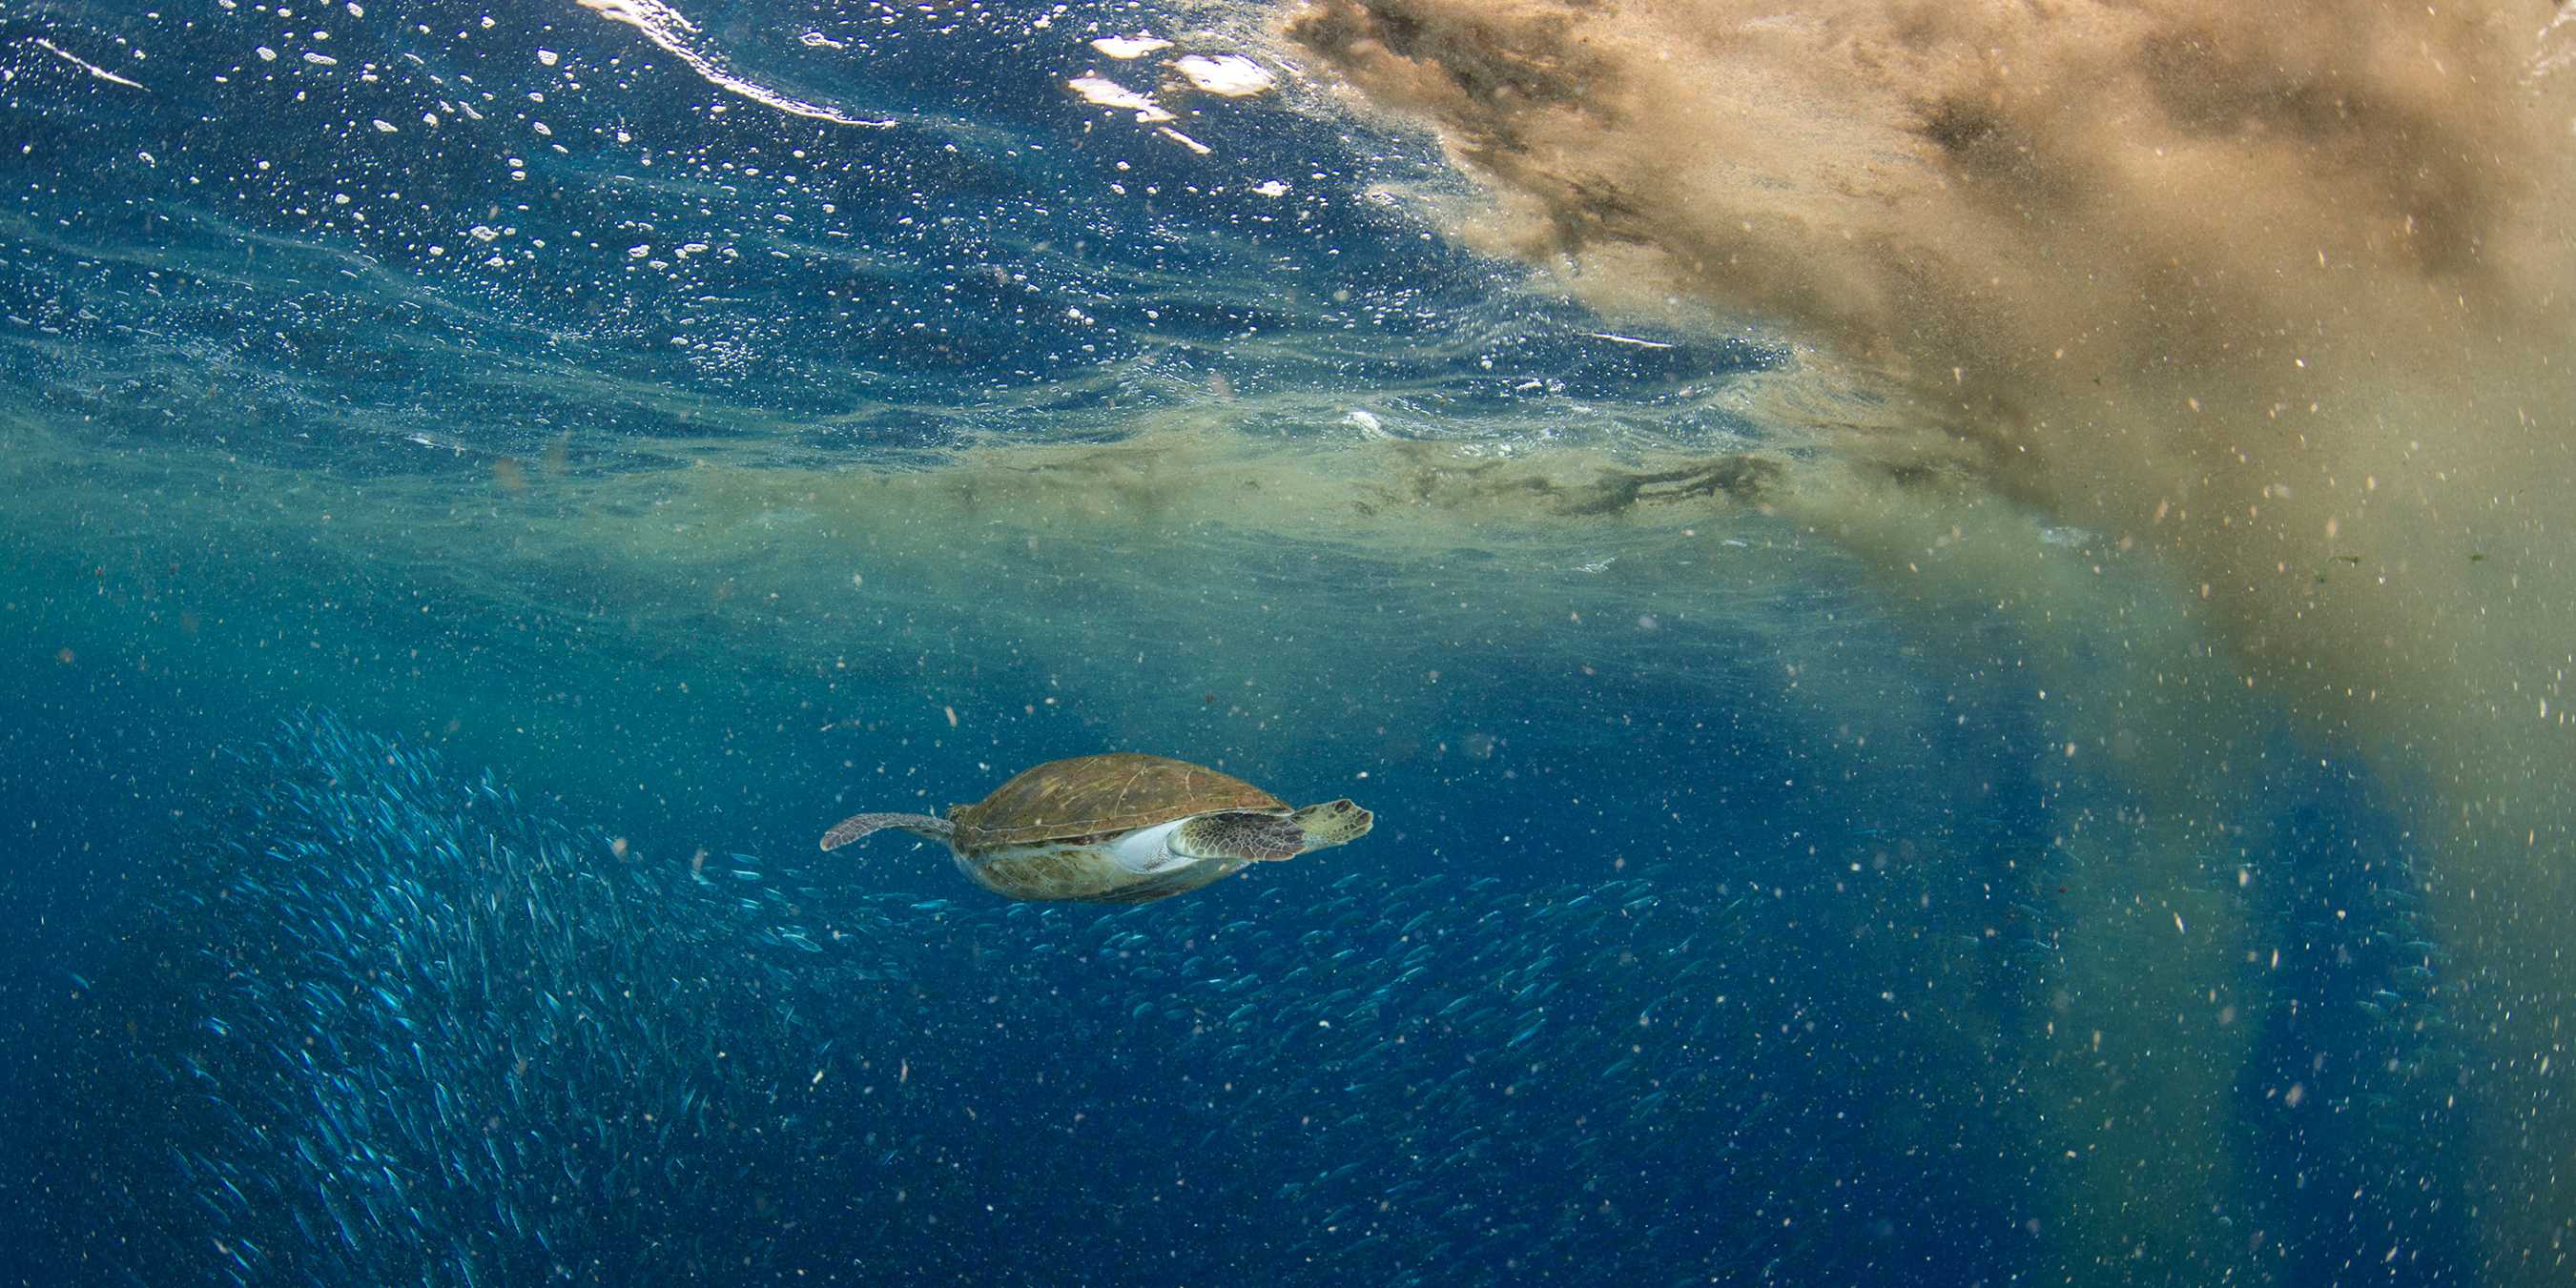 Schildkröte unter Wasser, vor ihr eine Staubwolke.